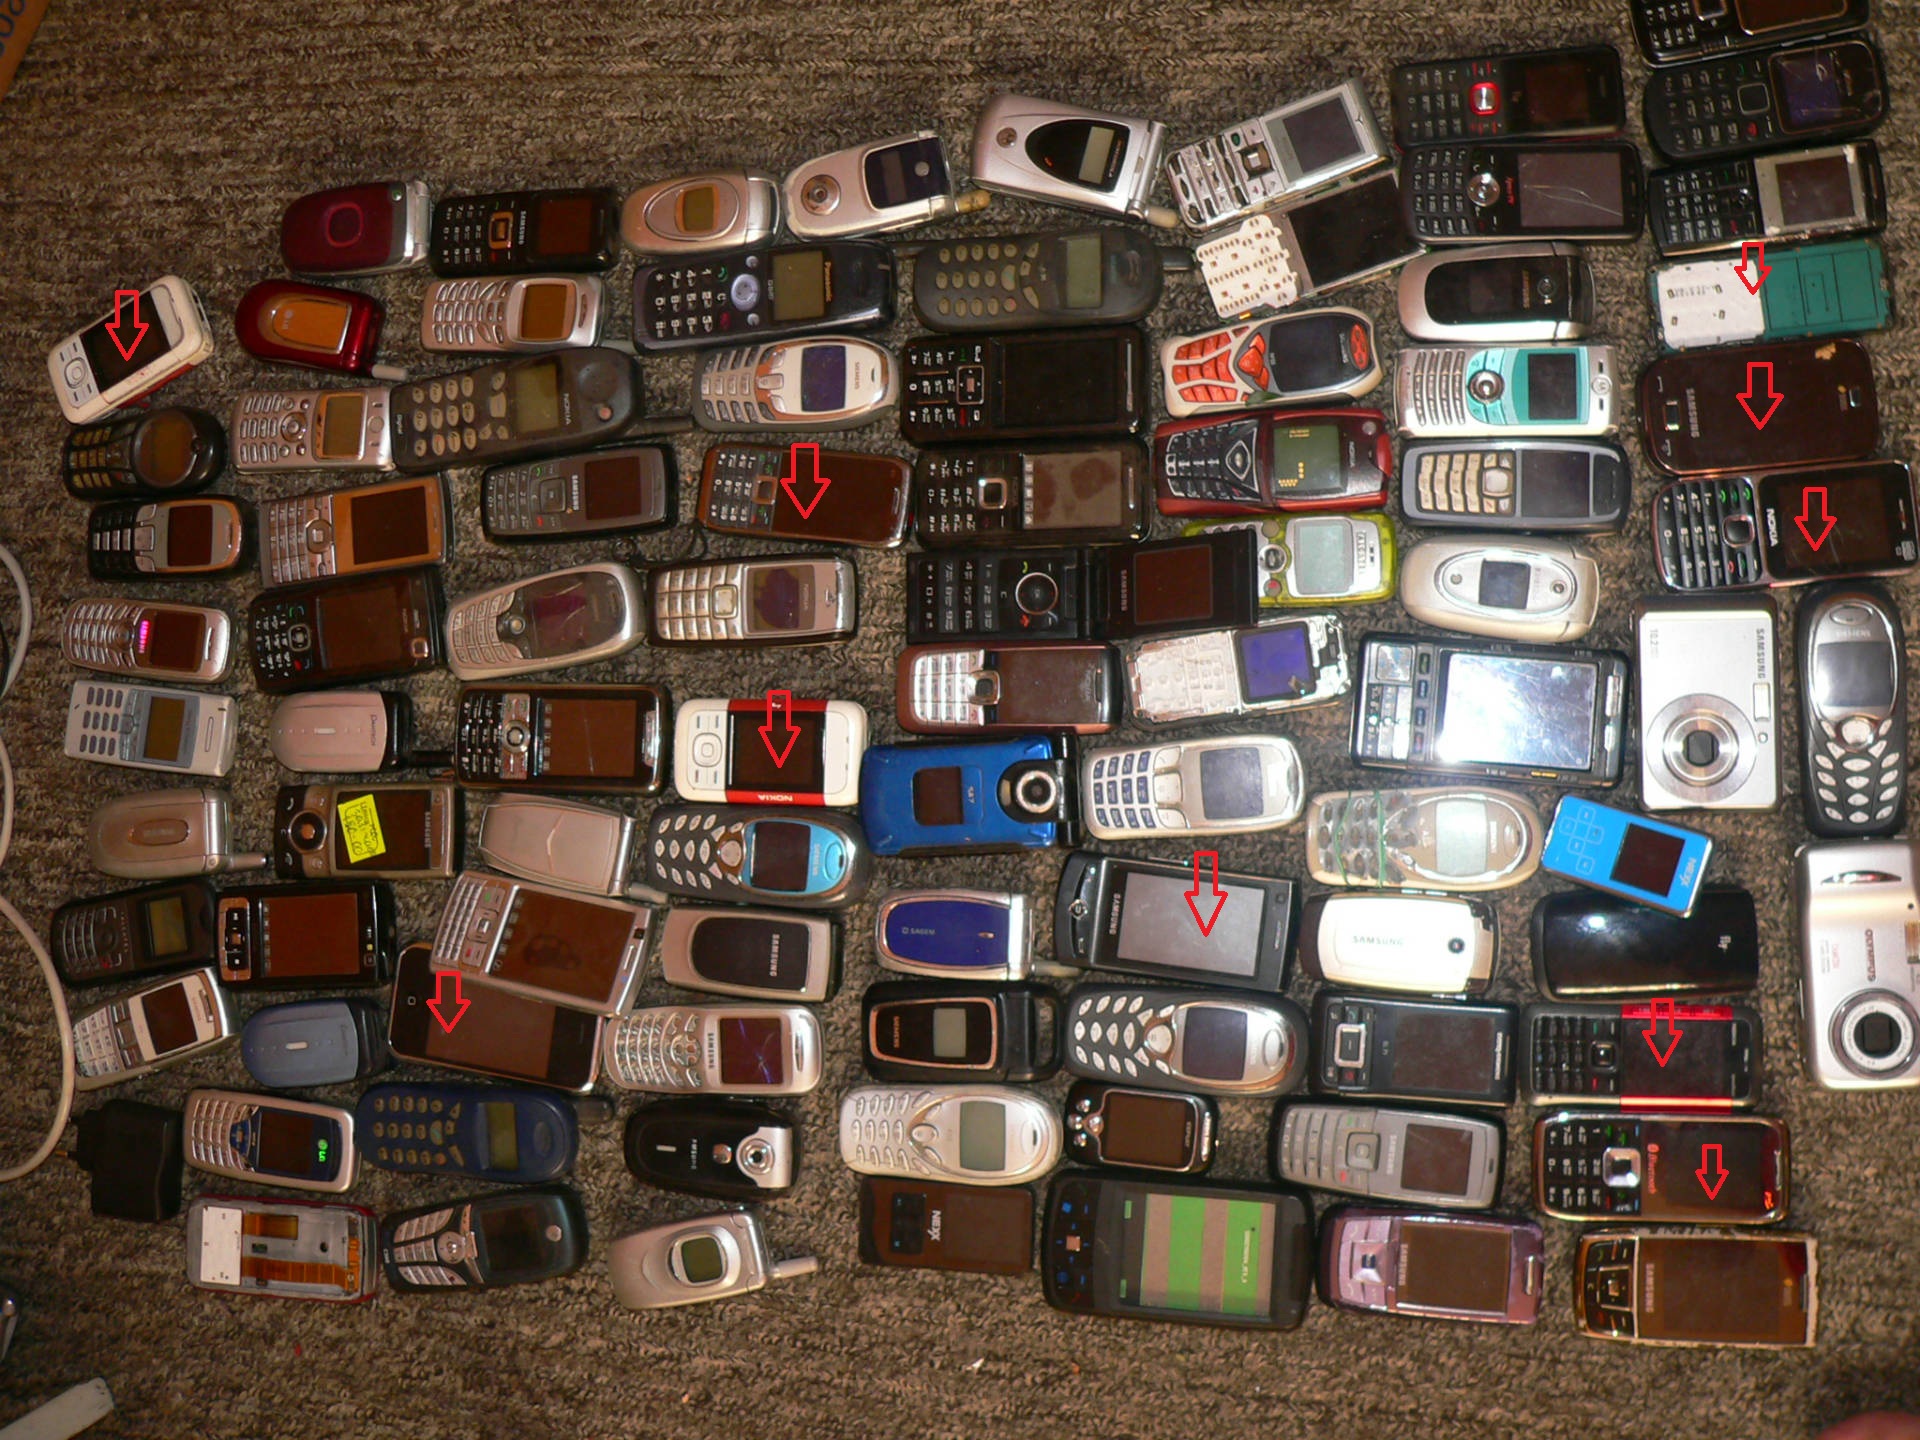 Бу телефоны в минске. Много старых смартфонов. Б/У телефоны. Коллекция старых телефонов. Куча разбитых телефонов.